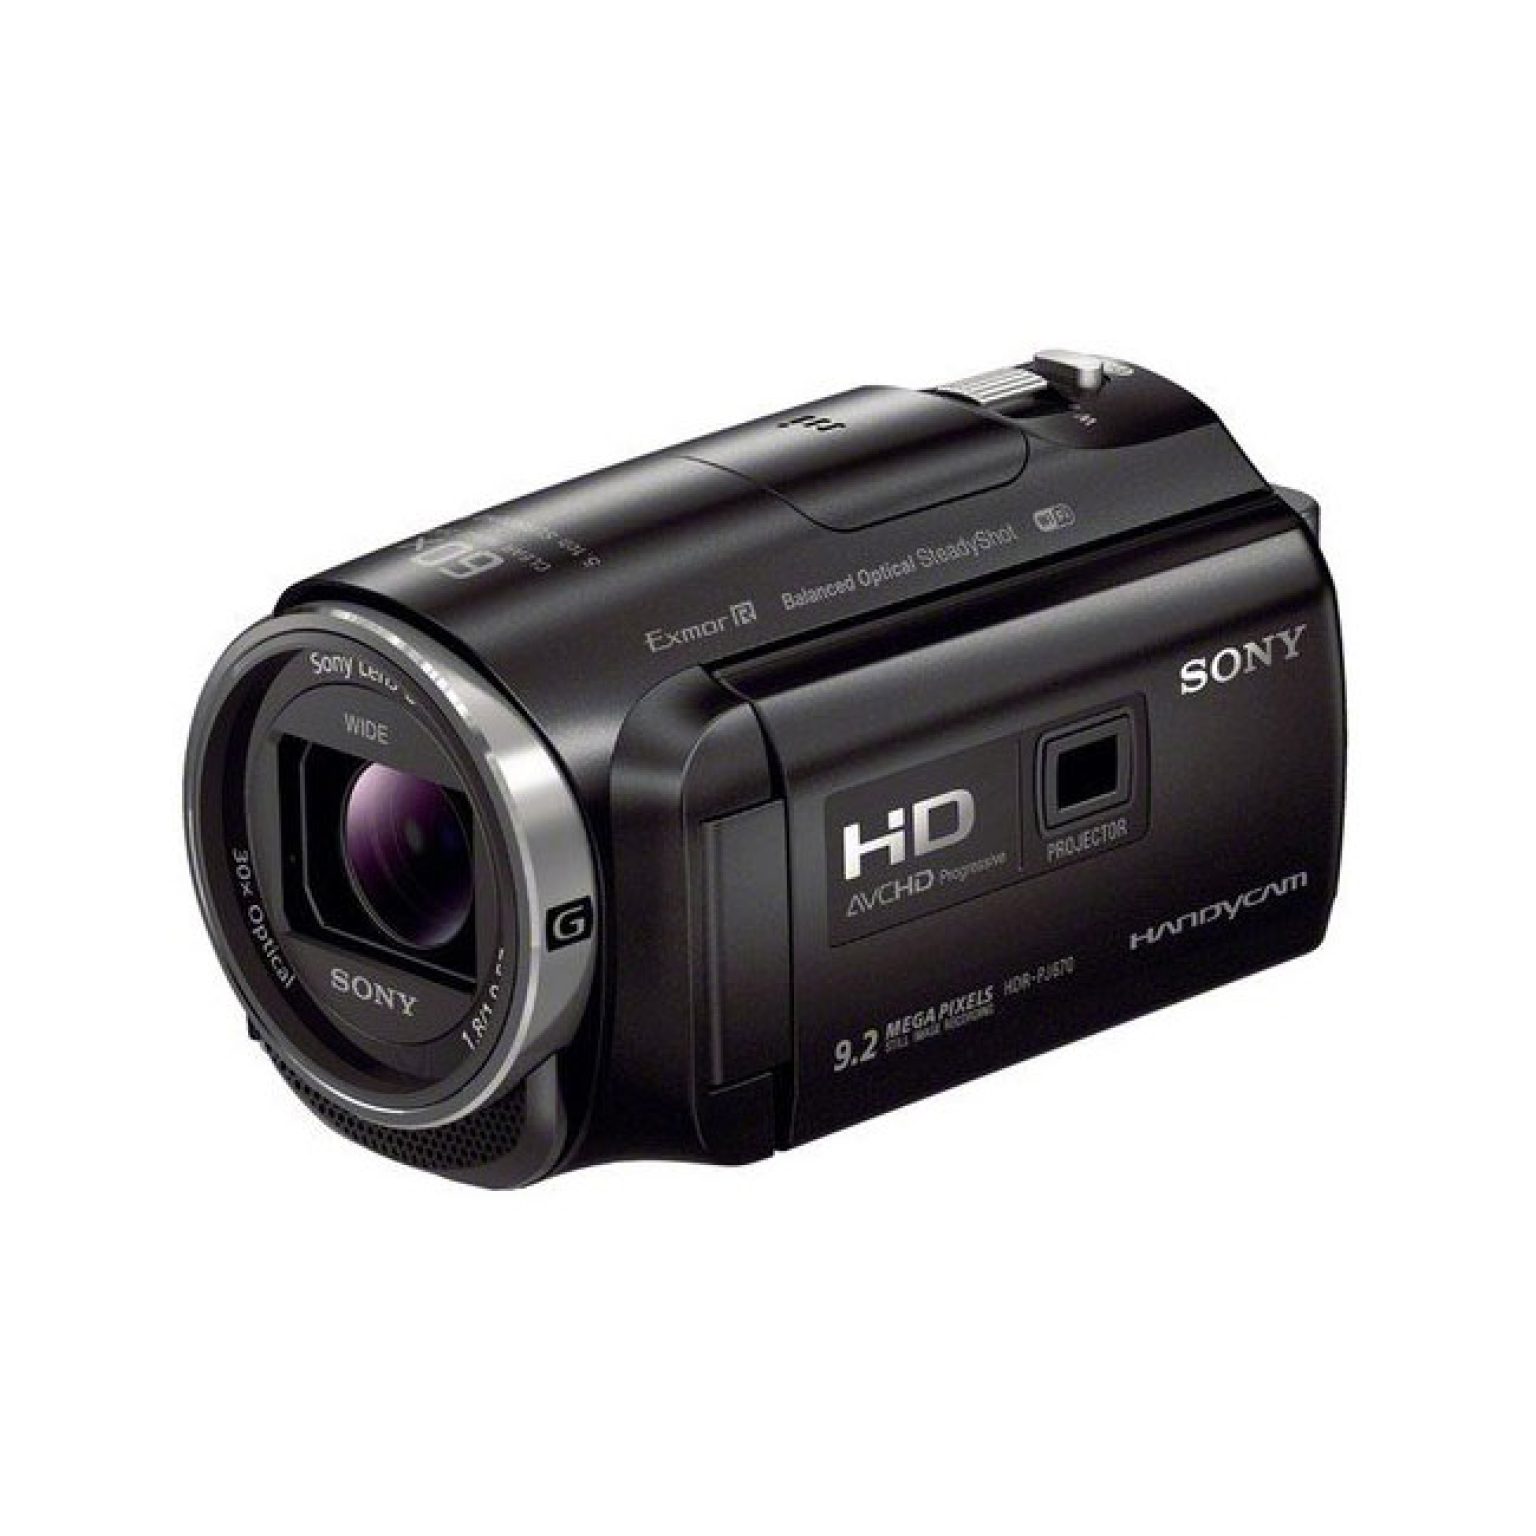 دوربین هندی کم سونی Sony HDR-PJ675 Full HD